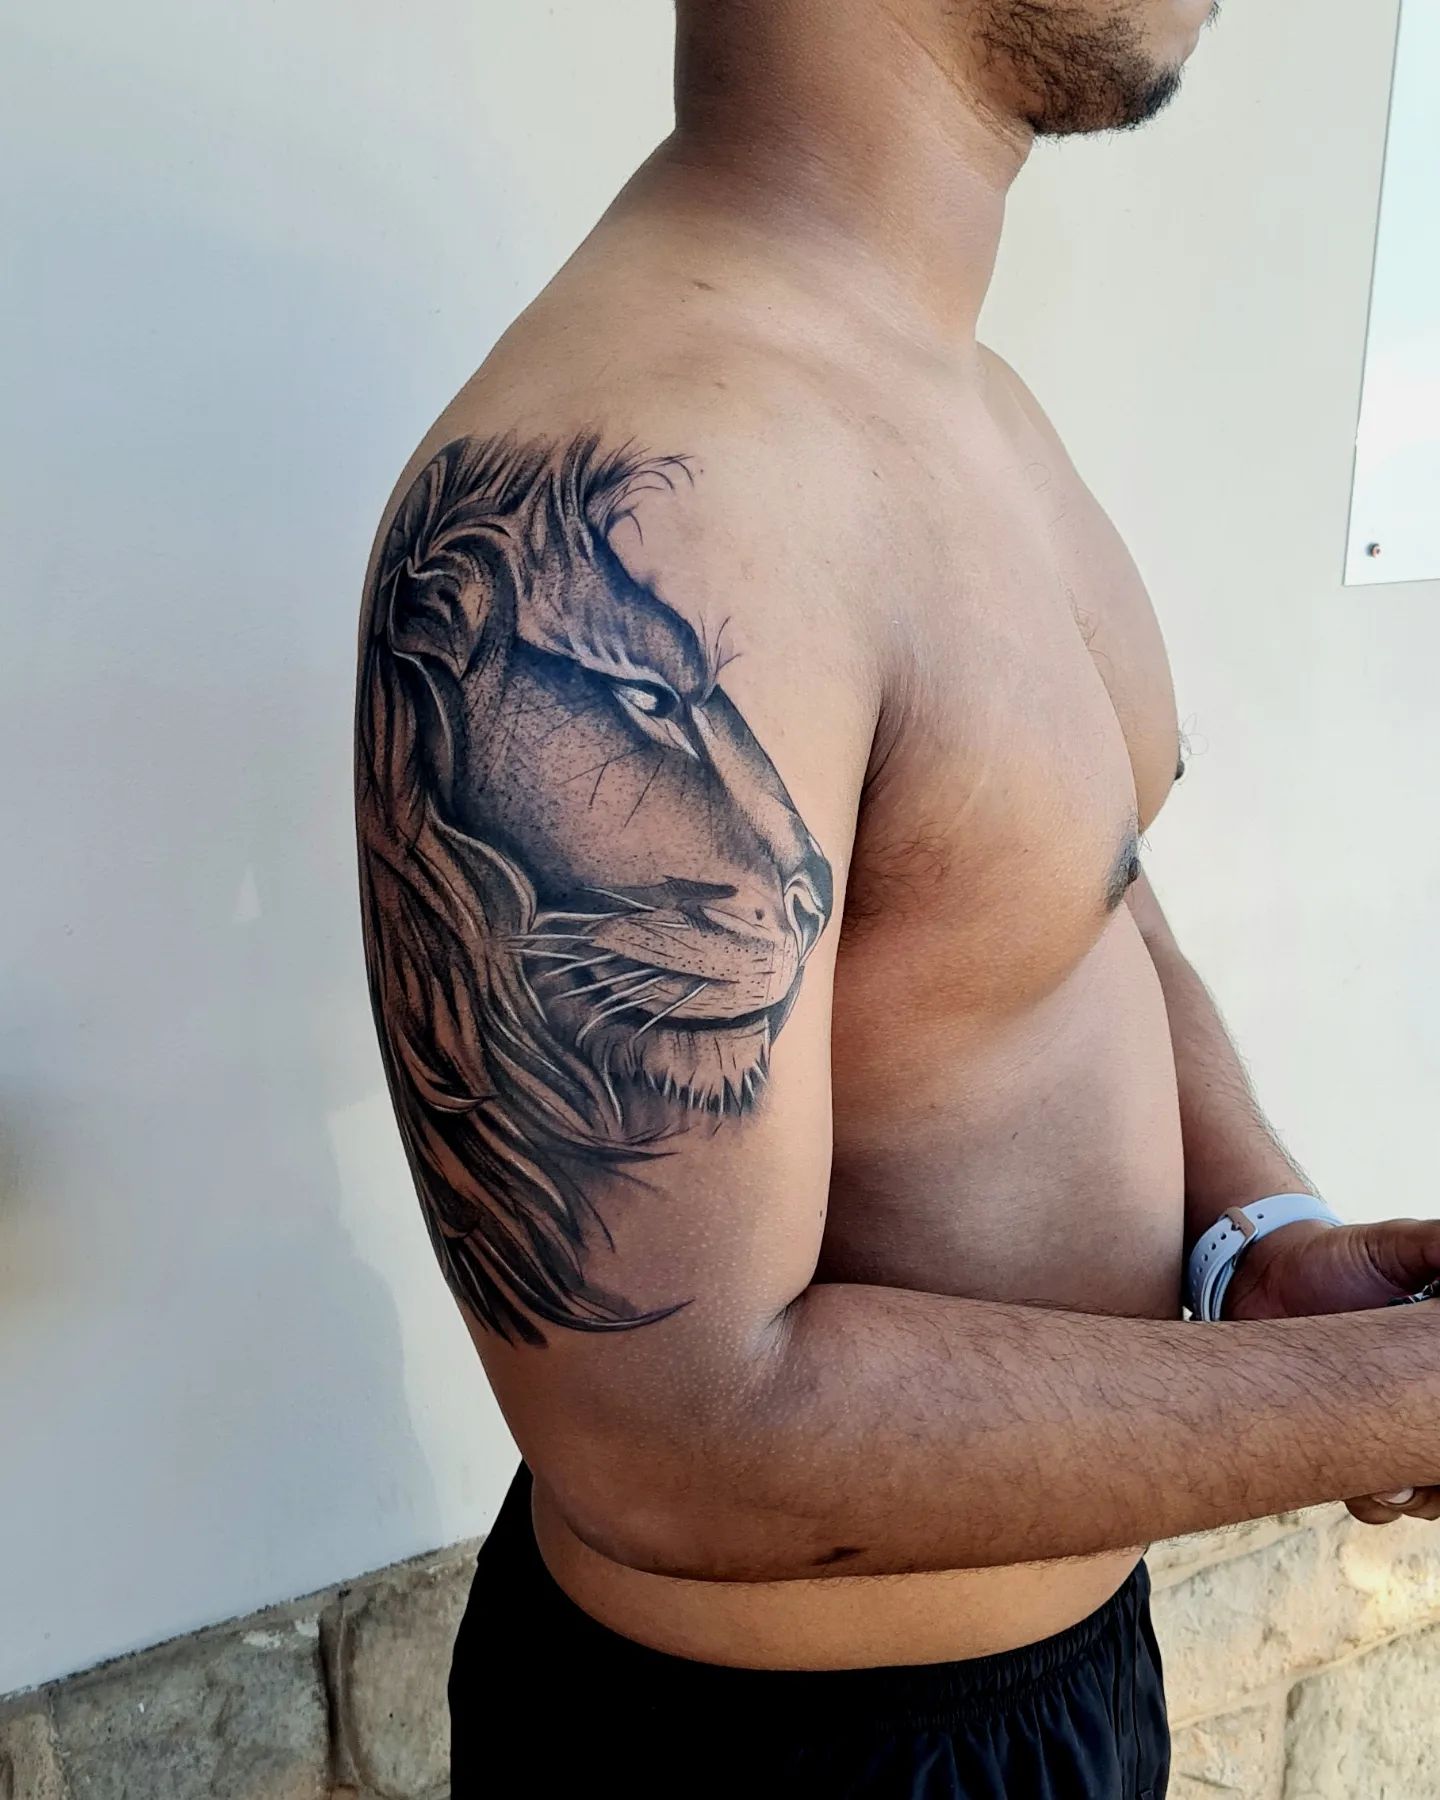 Tatuaje de medio brazo con estampado de león.